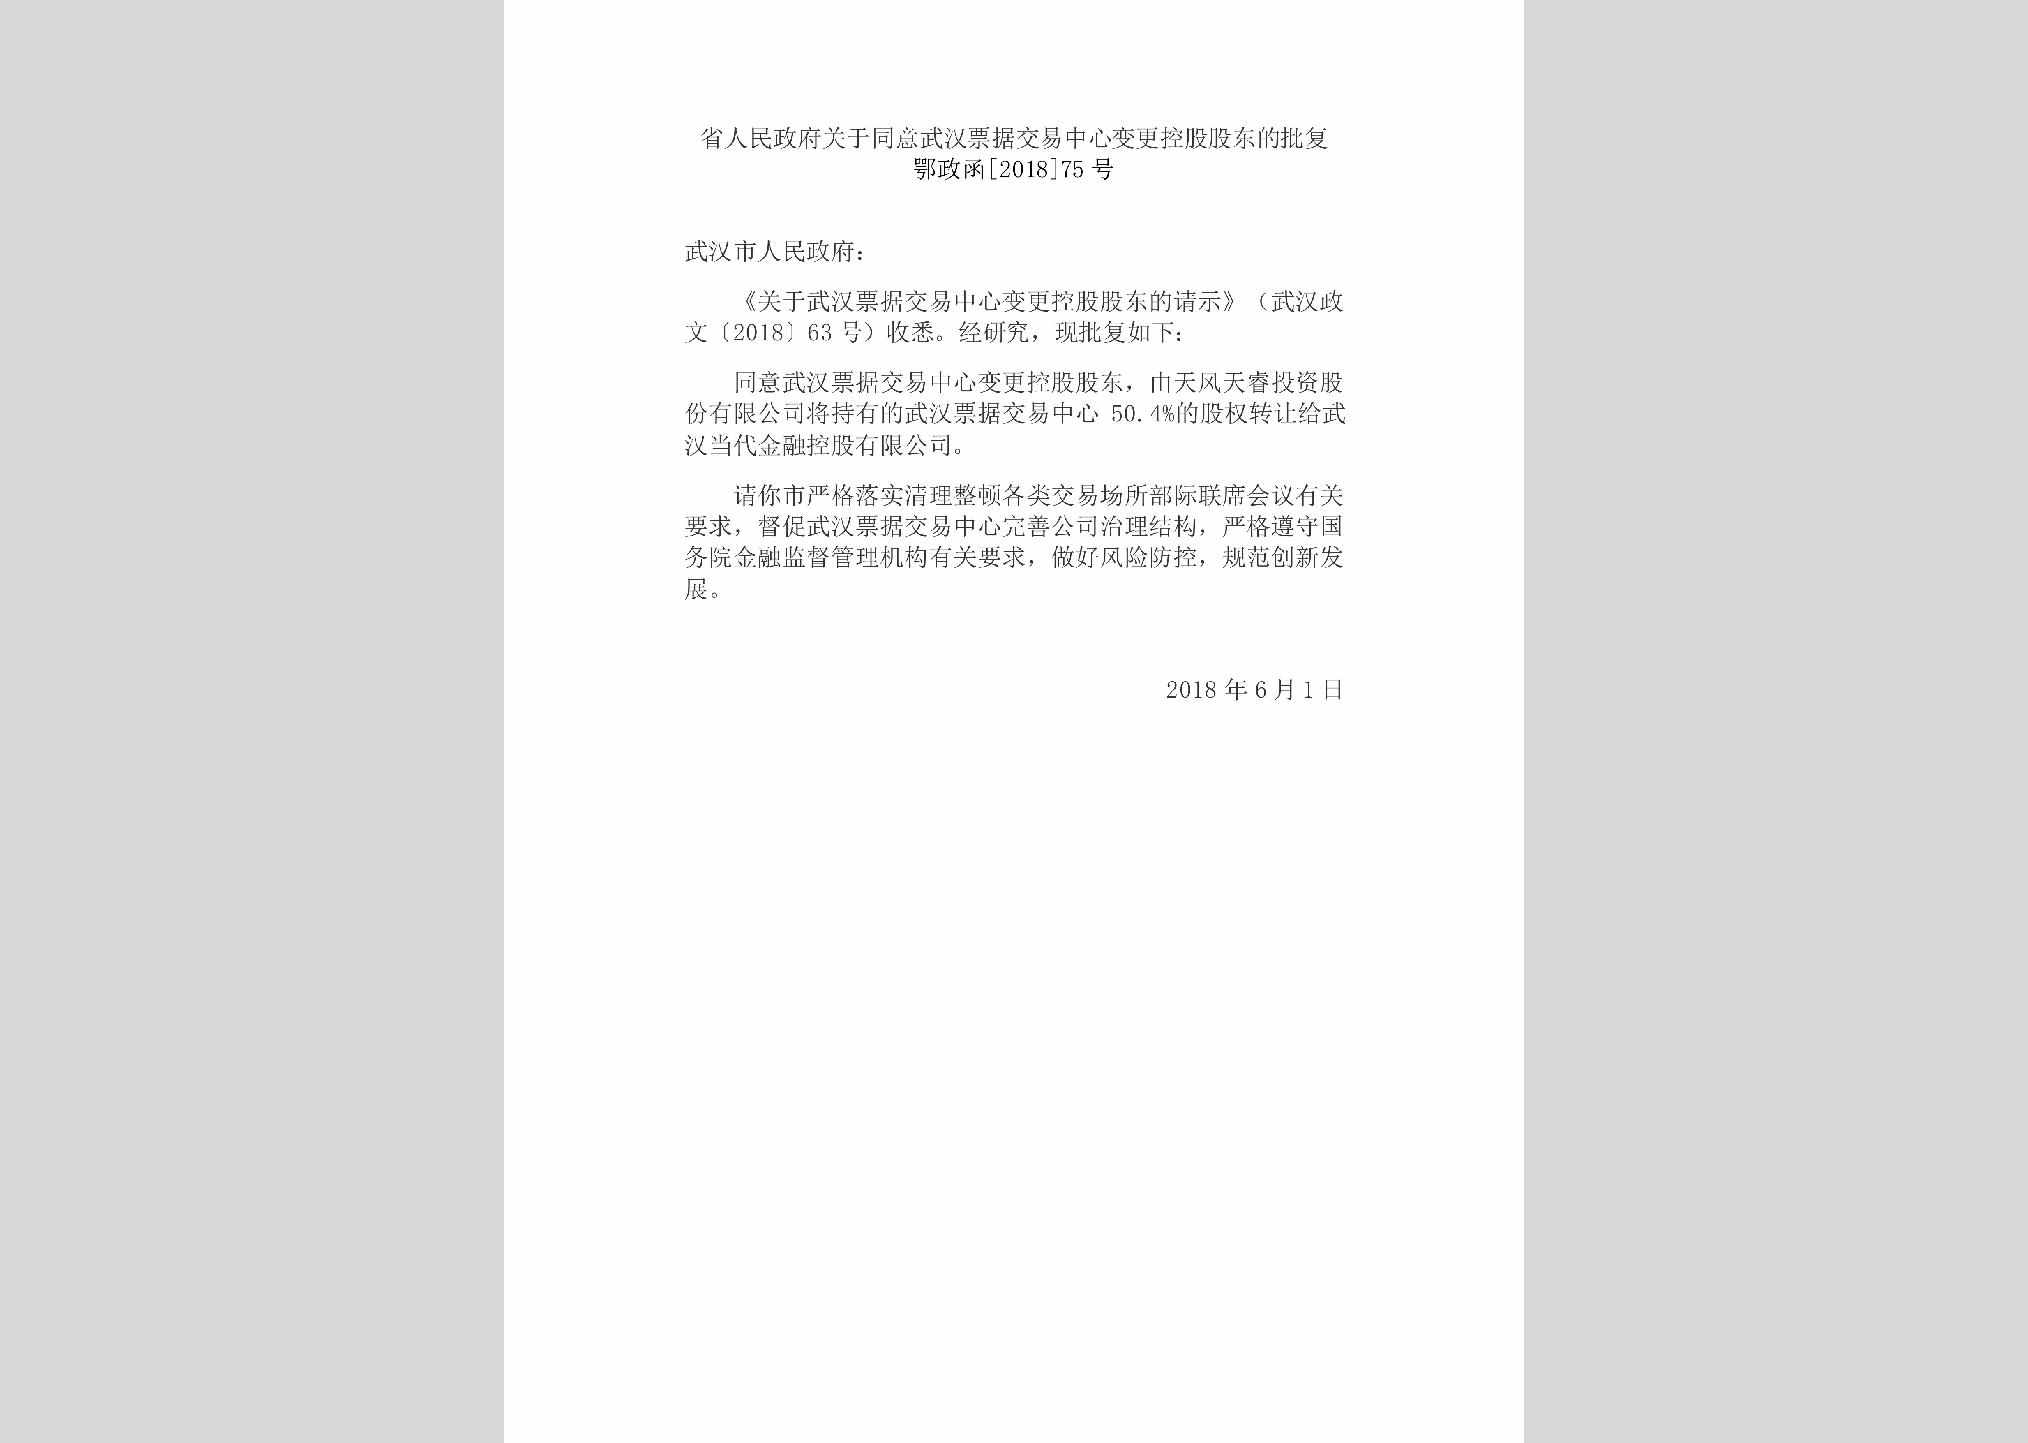 鄂政函[2018]75号：省人民政府关于同意武汉票据交易中心变更控股股东的批复